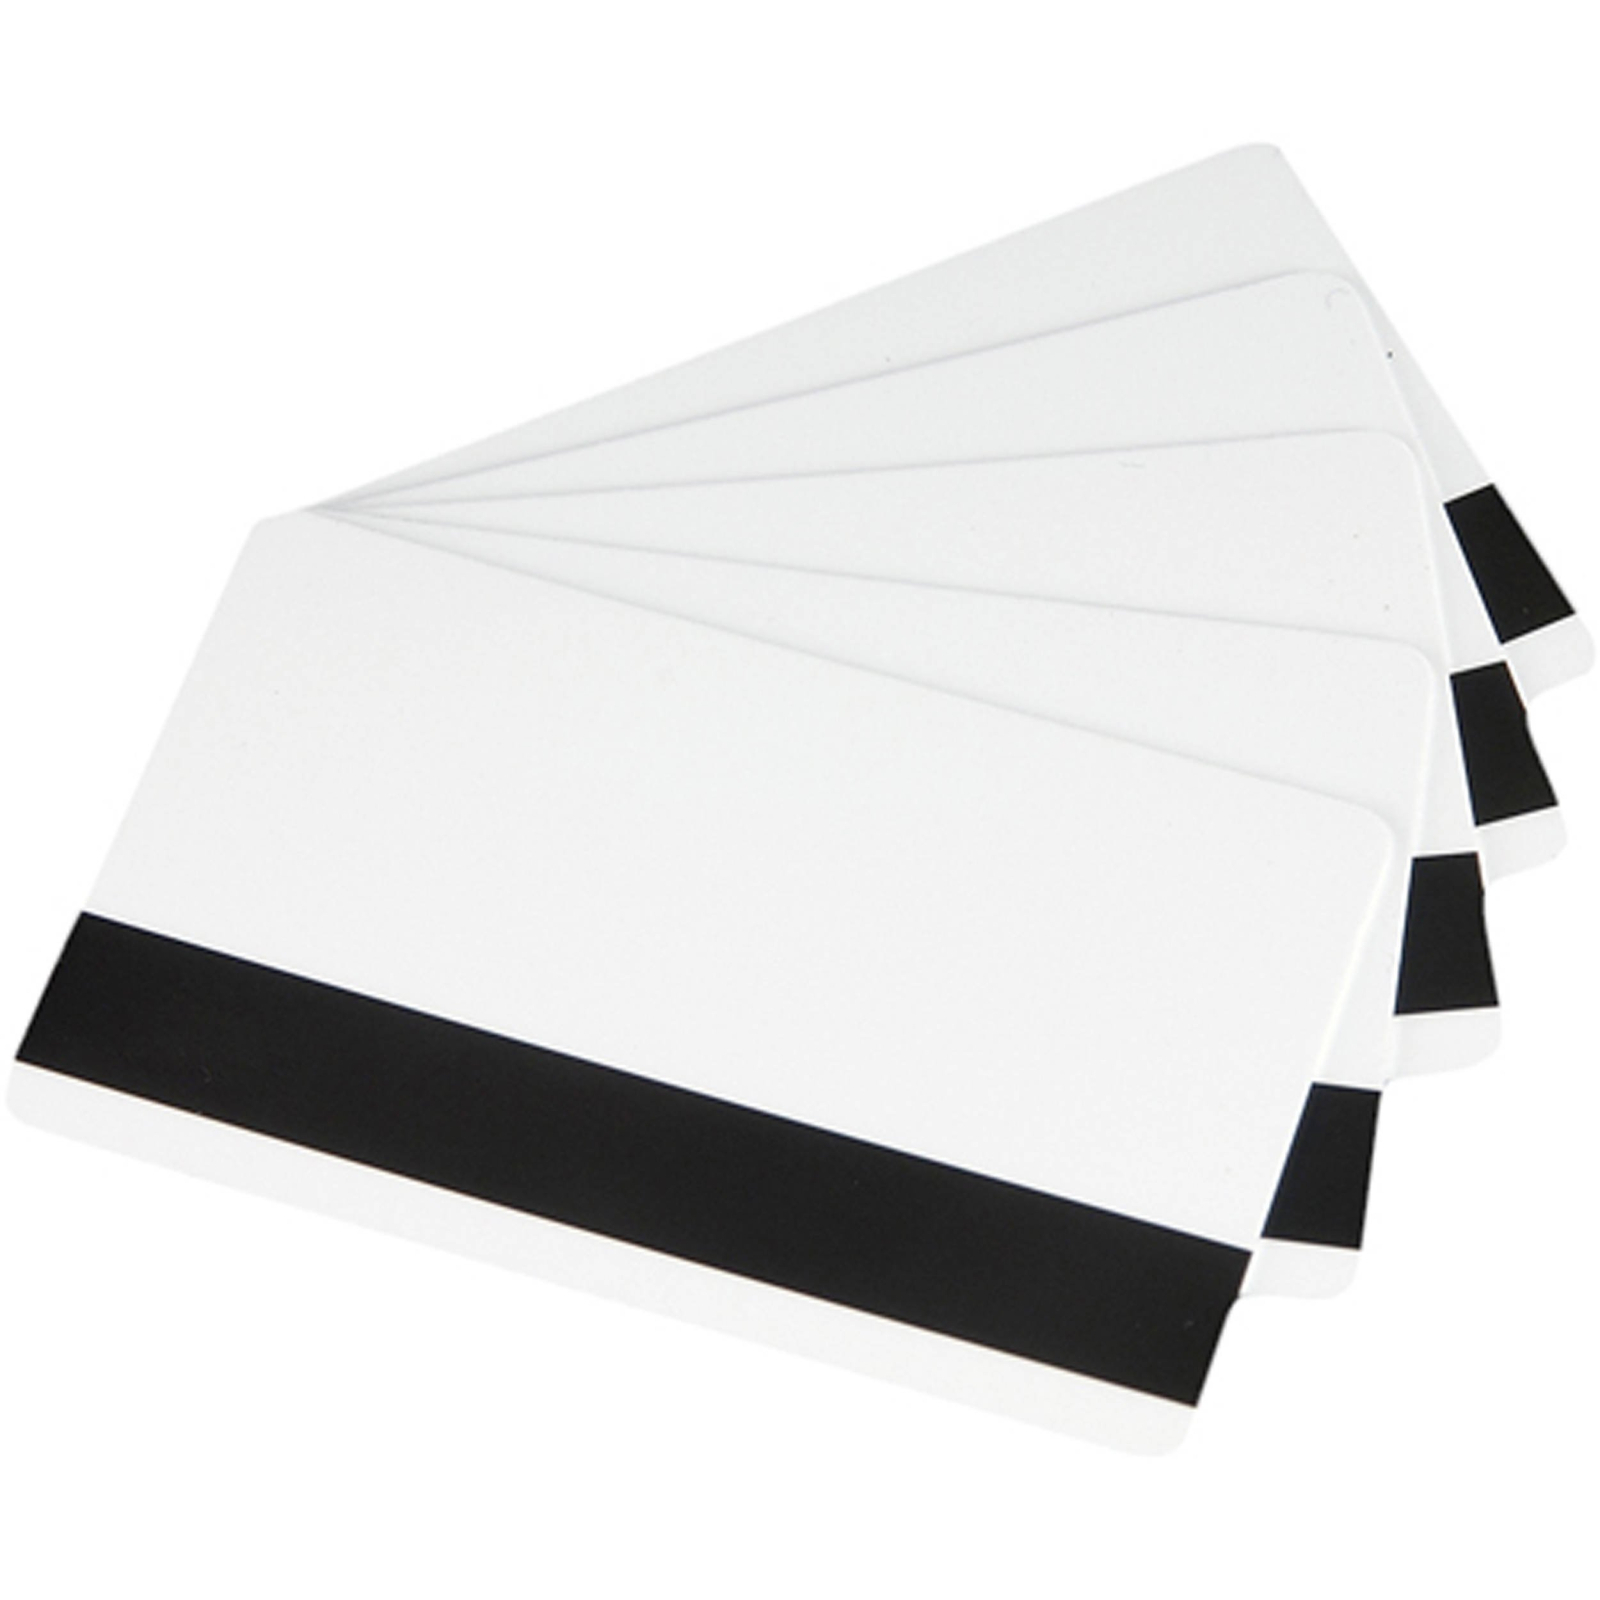 Картка пластикова чиста Zebra Premier (PVC), магнитная полоса, 30 mil, 500 шт (104523-112)